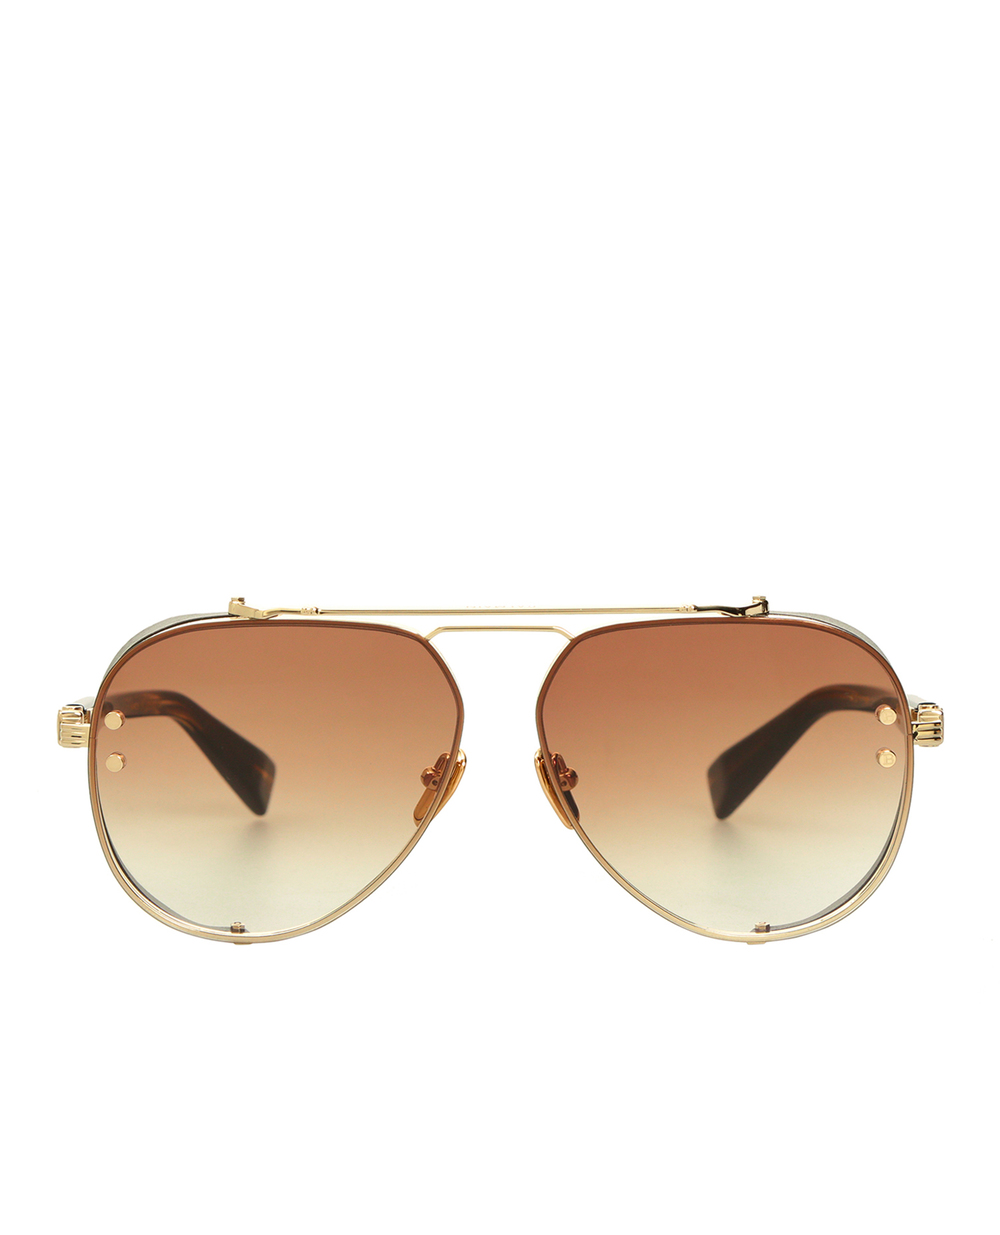 Солнцезащитные очки Balmain BPS-125B-62, коричневый цвет • Купить в интернет-магазине Kameron